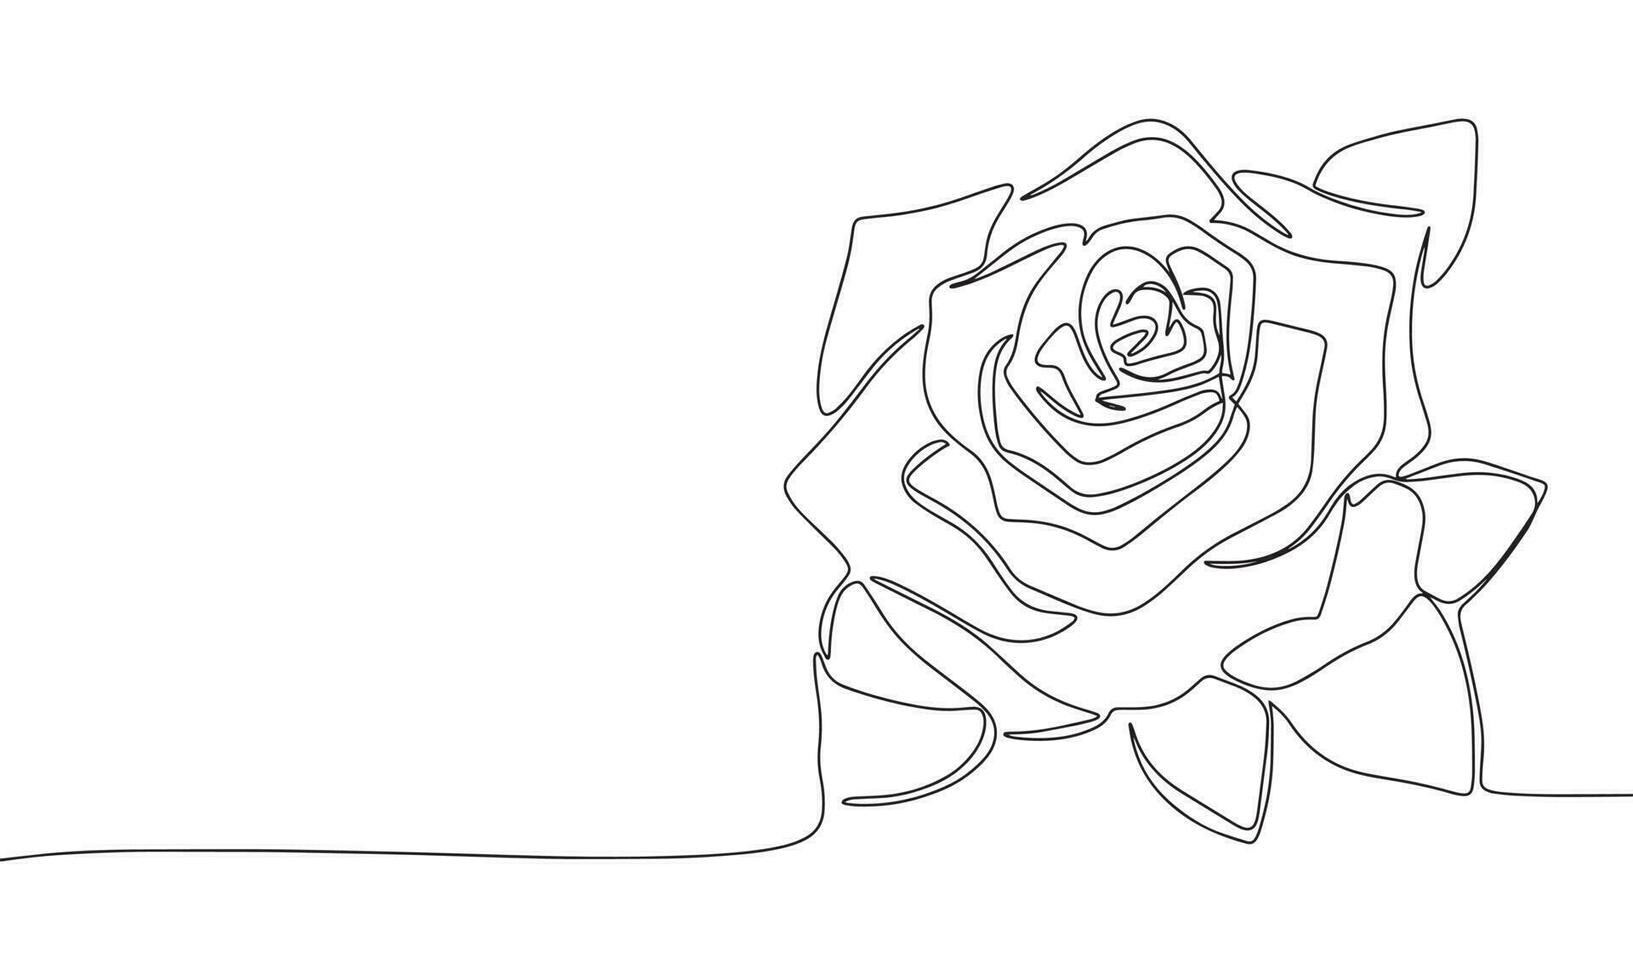 Rose Blume wie einer Linie Zeichnung Banner. kontinuierlich Hand gezeichnet minimalistisch Minimalismus Design isoliert auf Weiß Hintergrund Vektor Illustration.